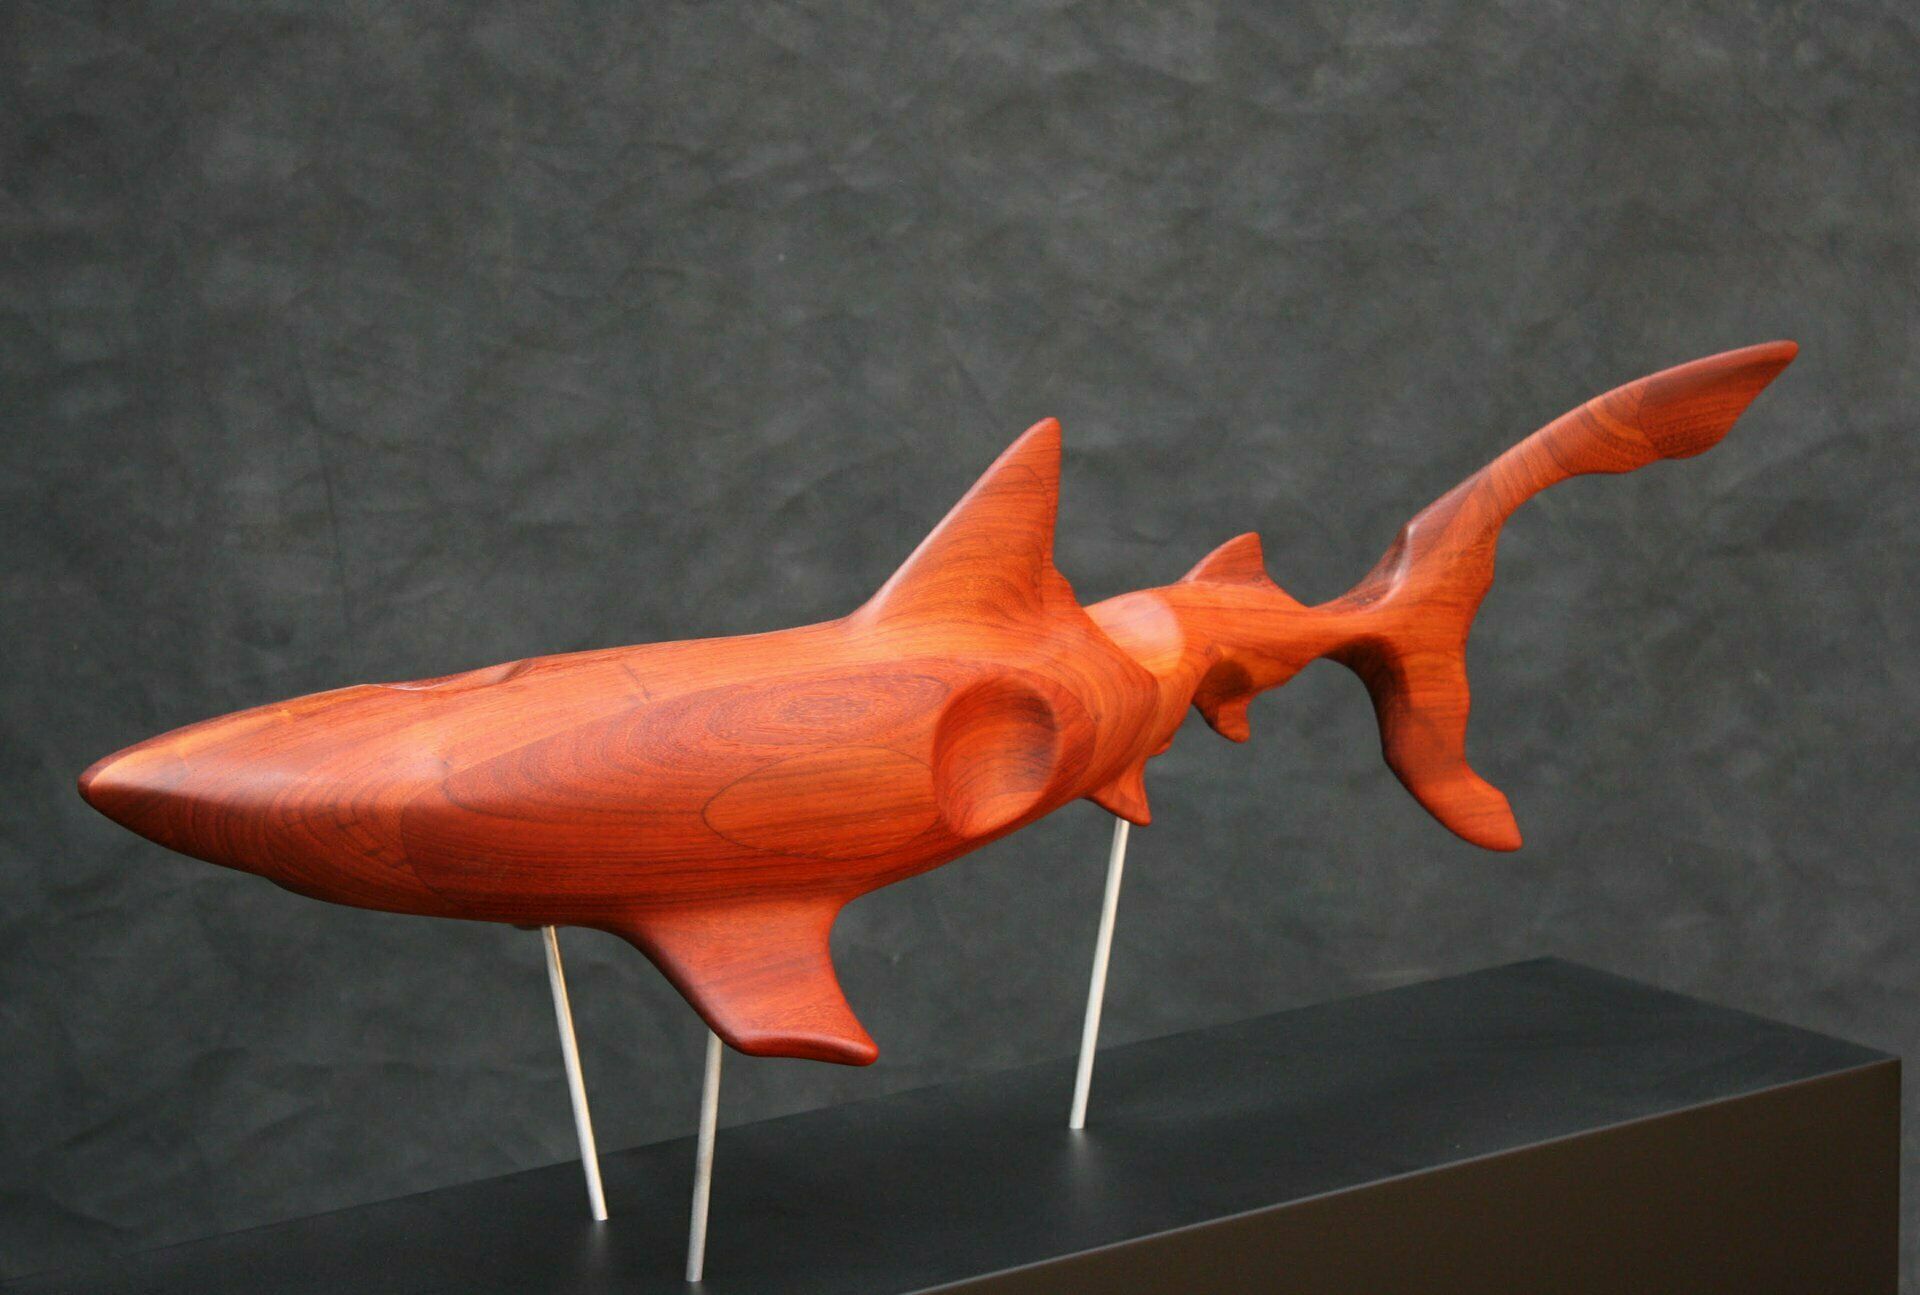 Sculpture "The blue shark" (2017)